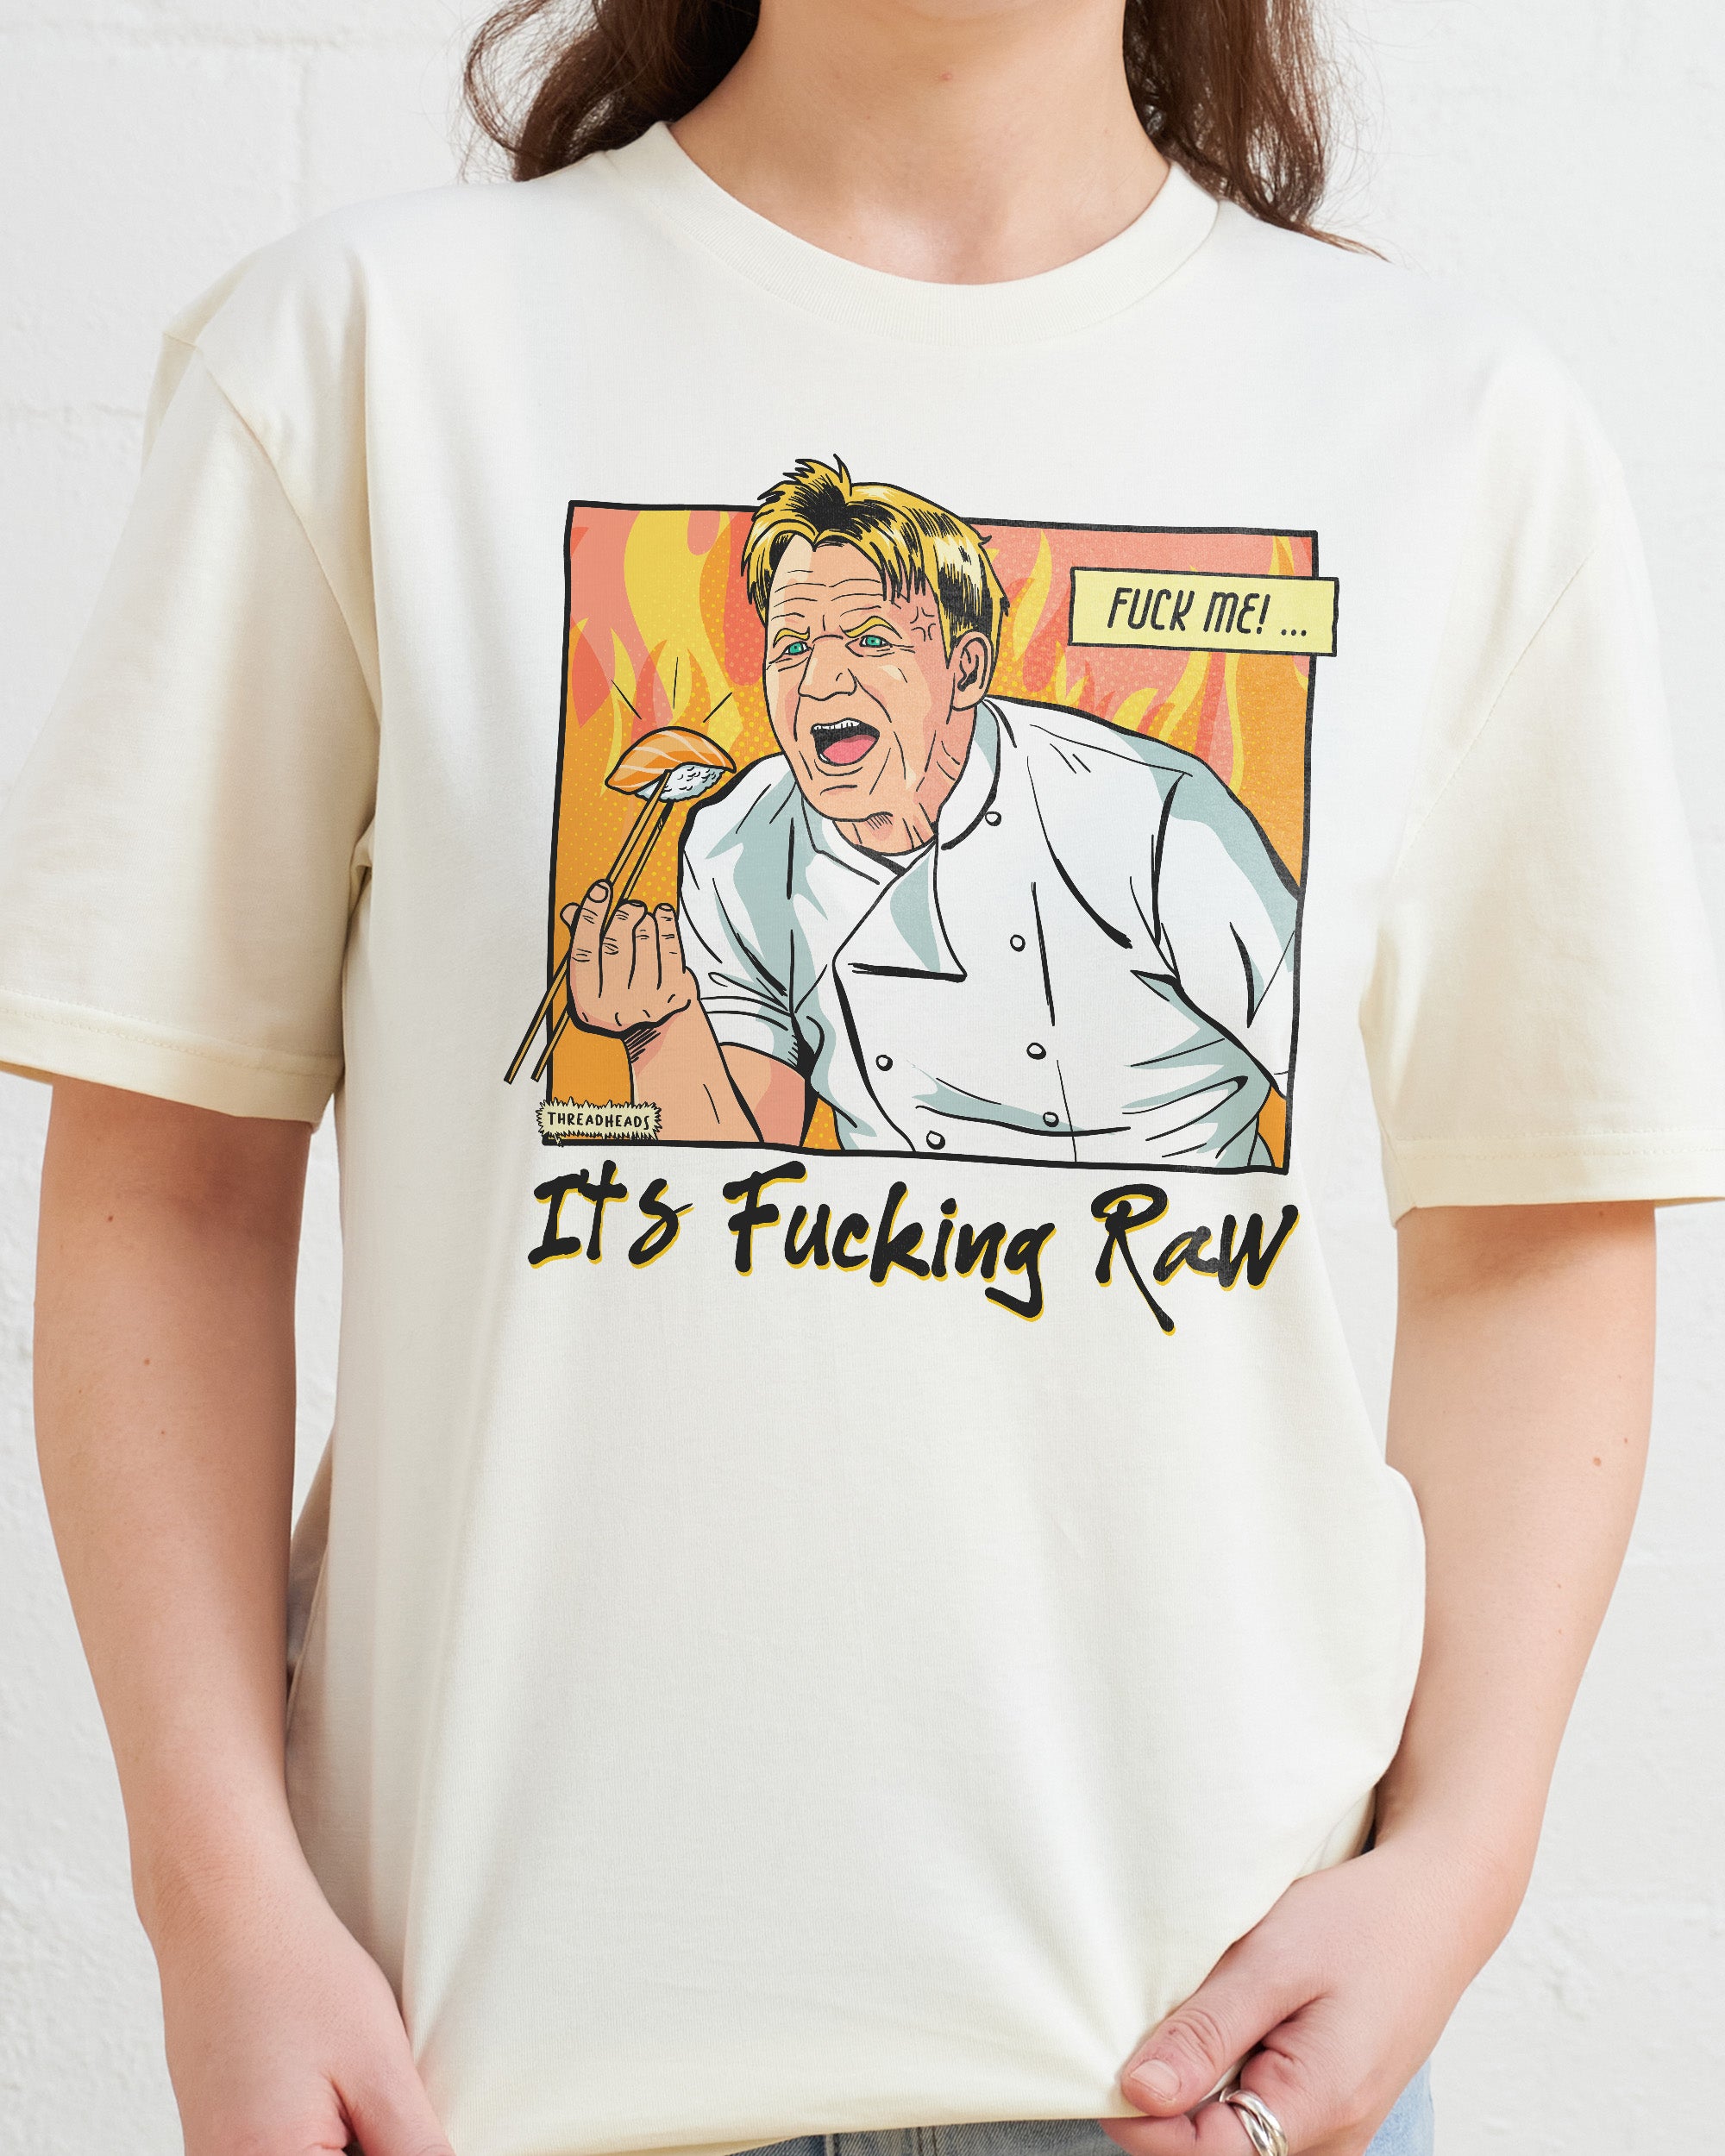 It's Raw! T-Shirt Australia Online